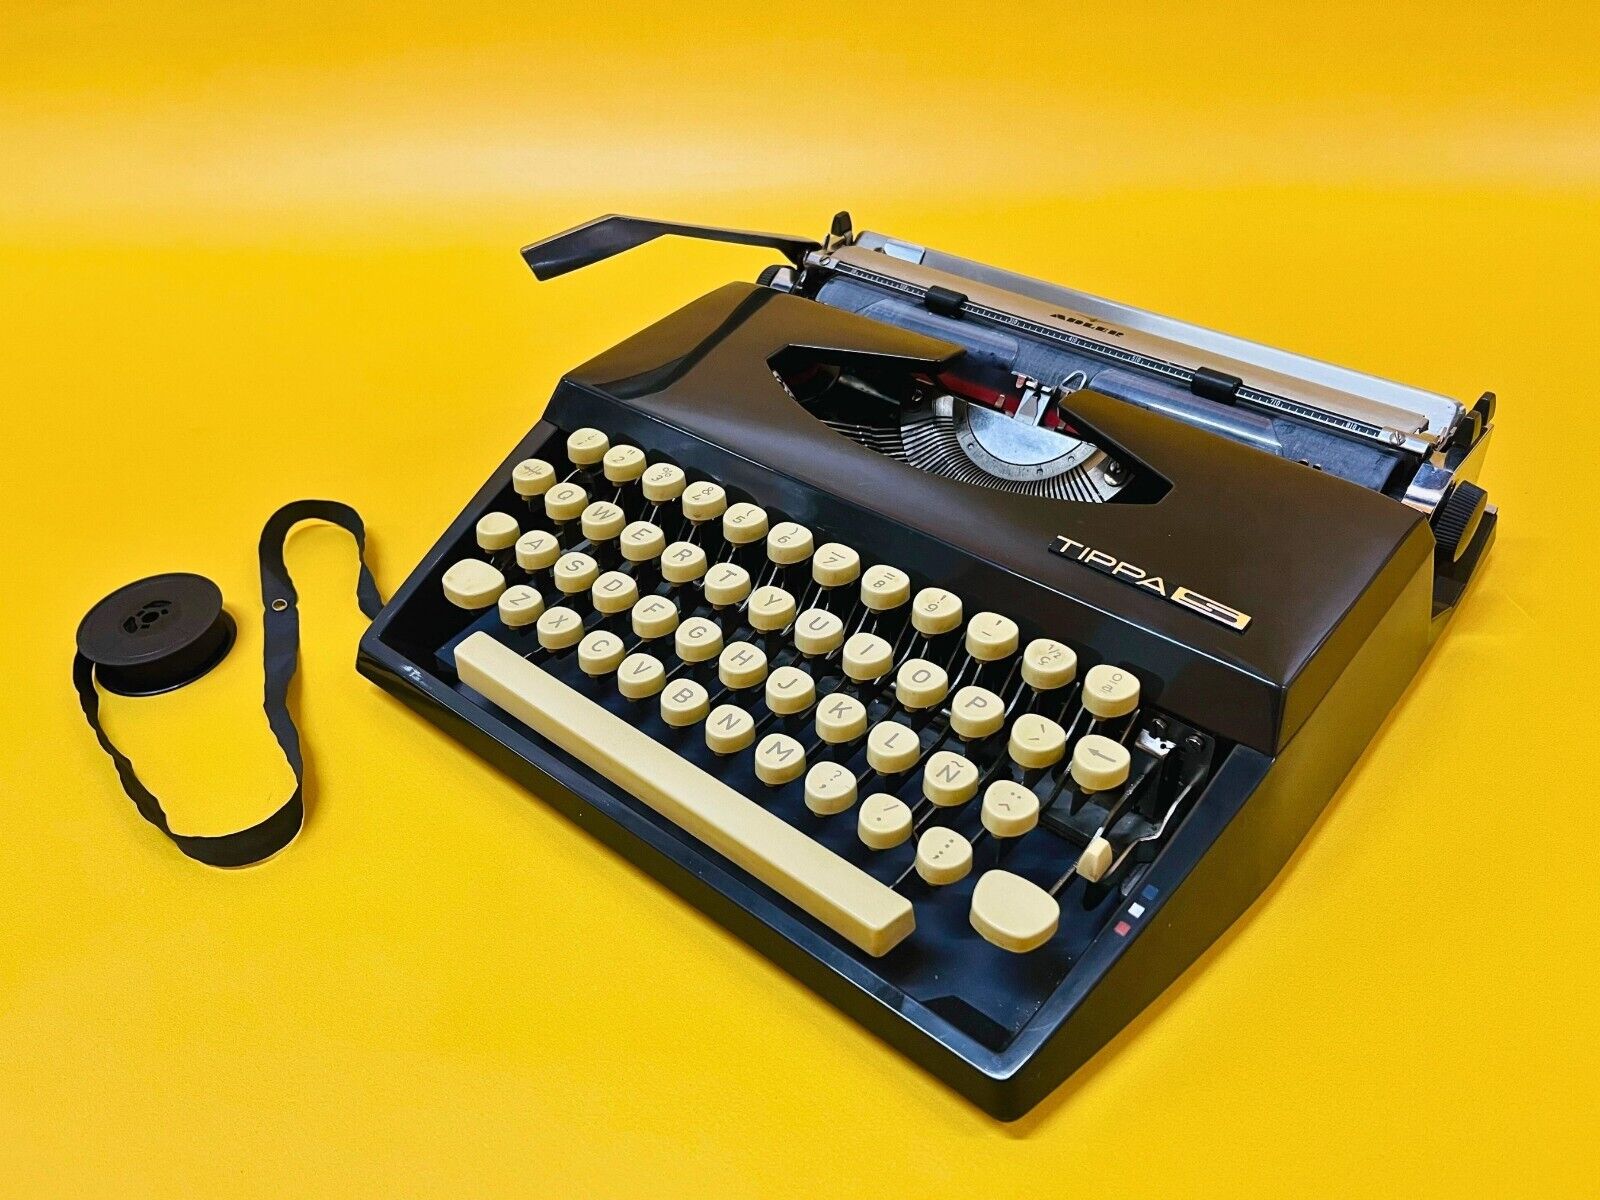 Working TYPEWRITER Adler Tippa S Black Typewriter Manual Typewriter 70 with Case